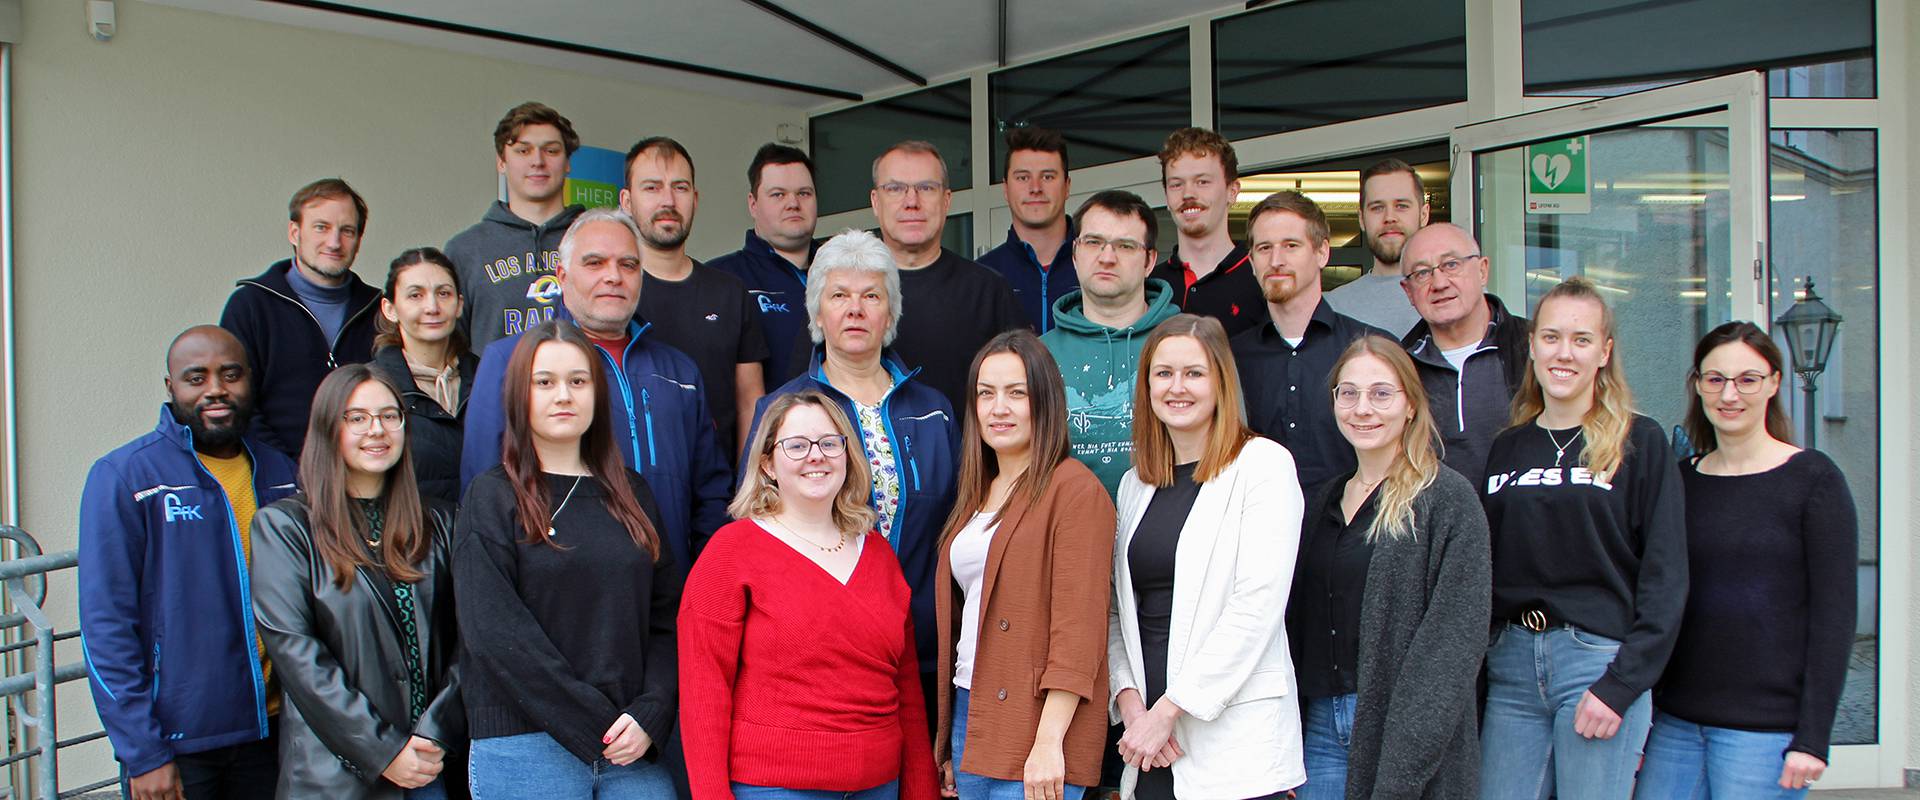 PfK Ansbach – das Ingenieurbüro für Ver- und Entsorgung